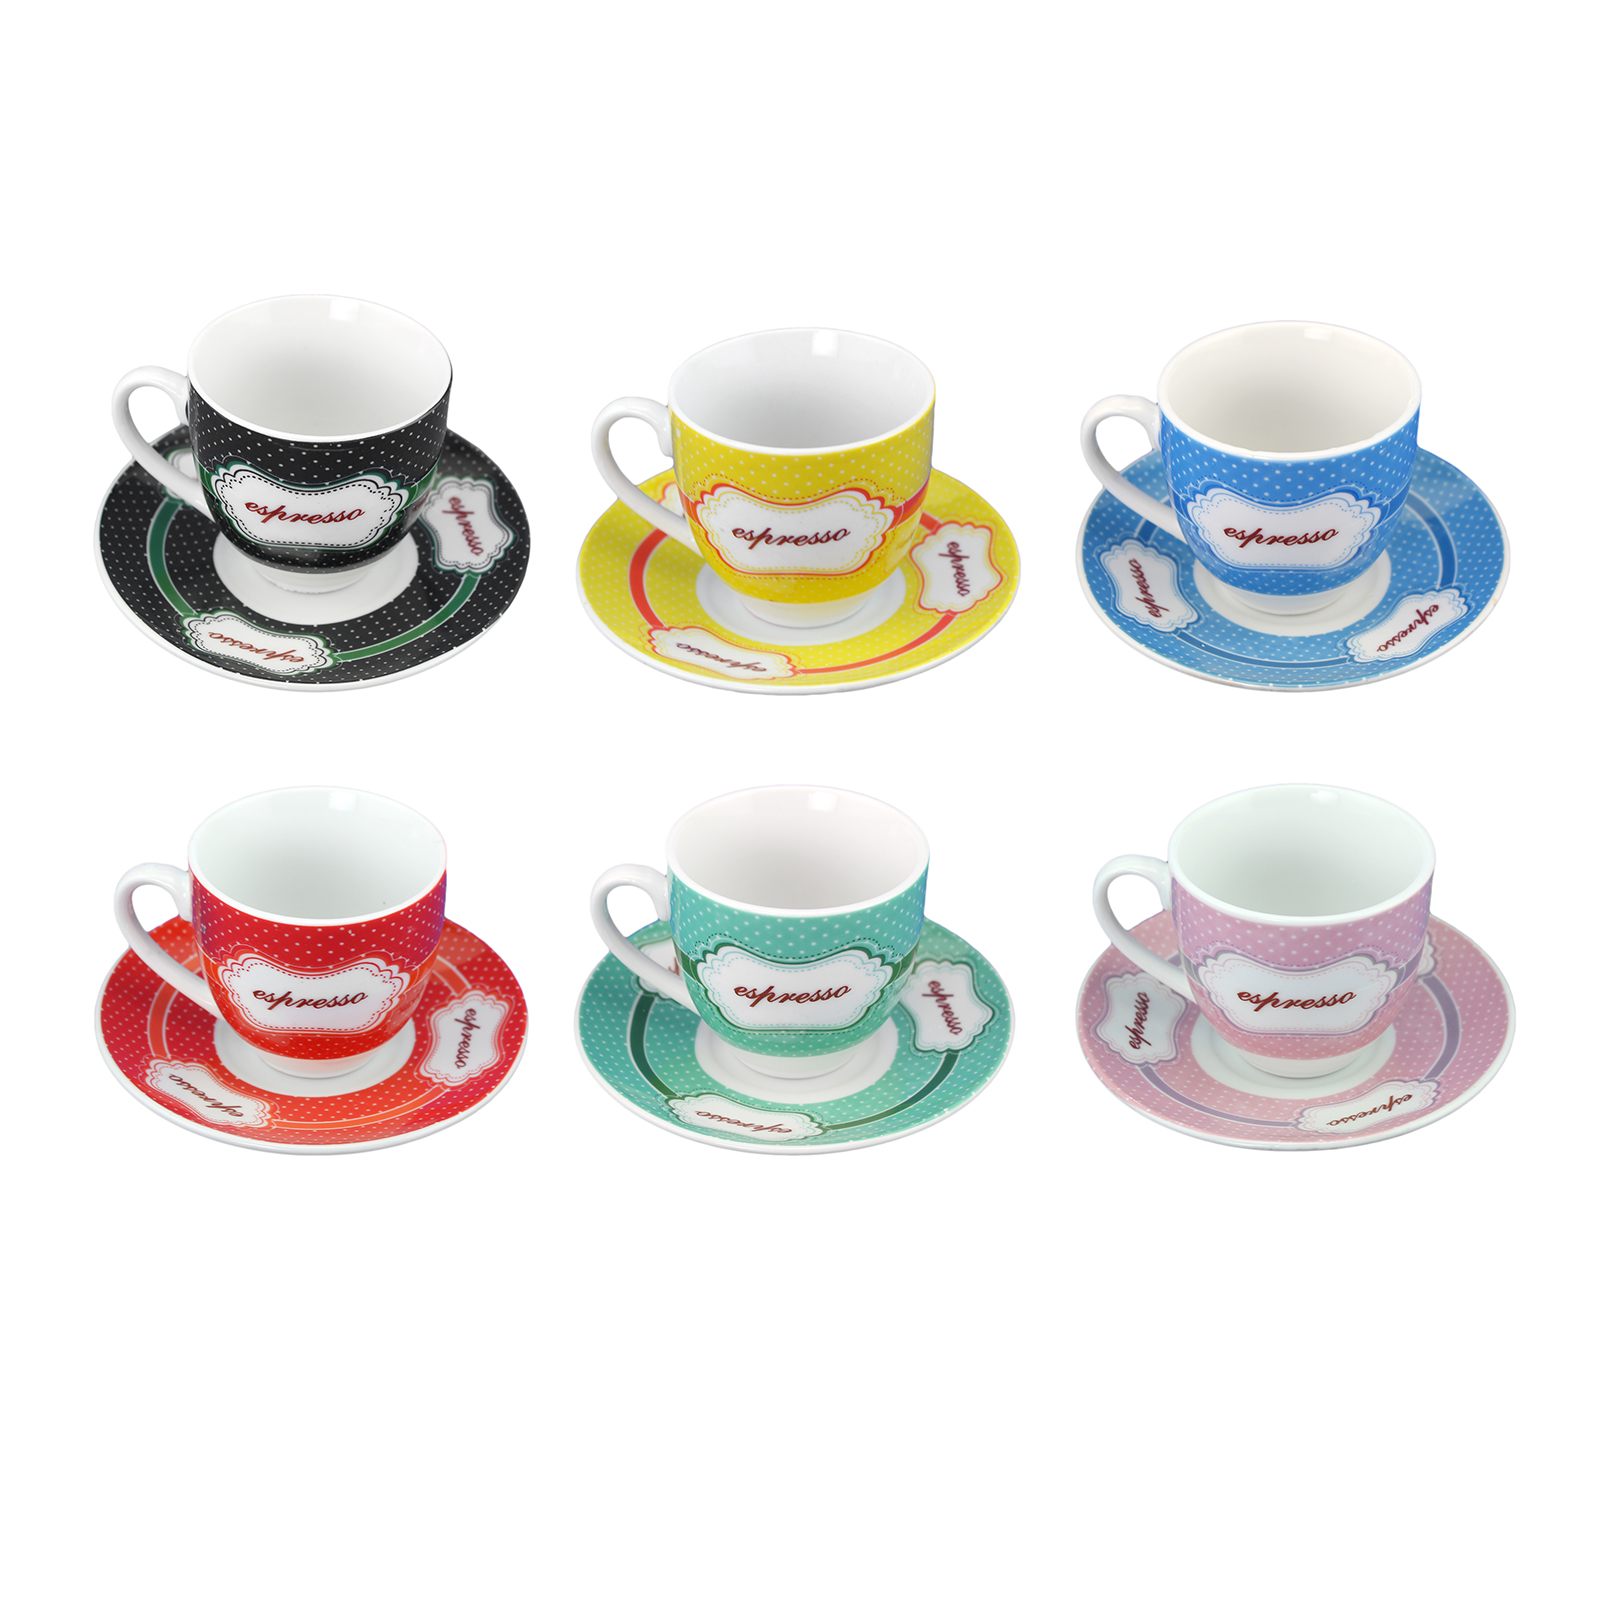  6 PC Set of Mini Small Ceramic Espresso Cups and